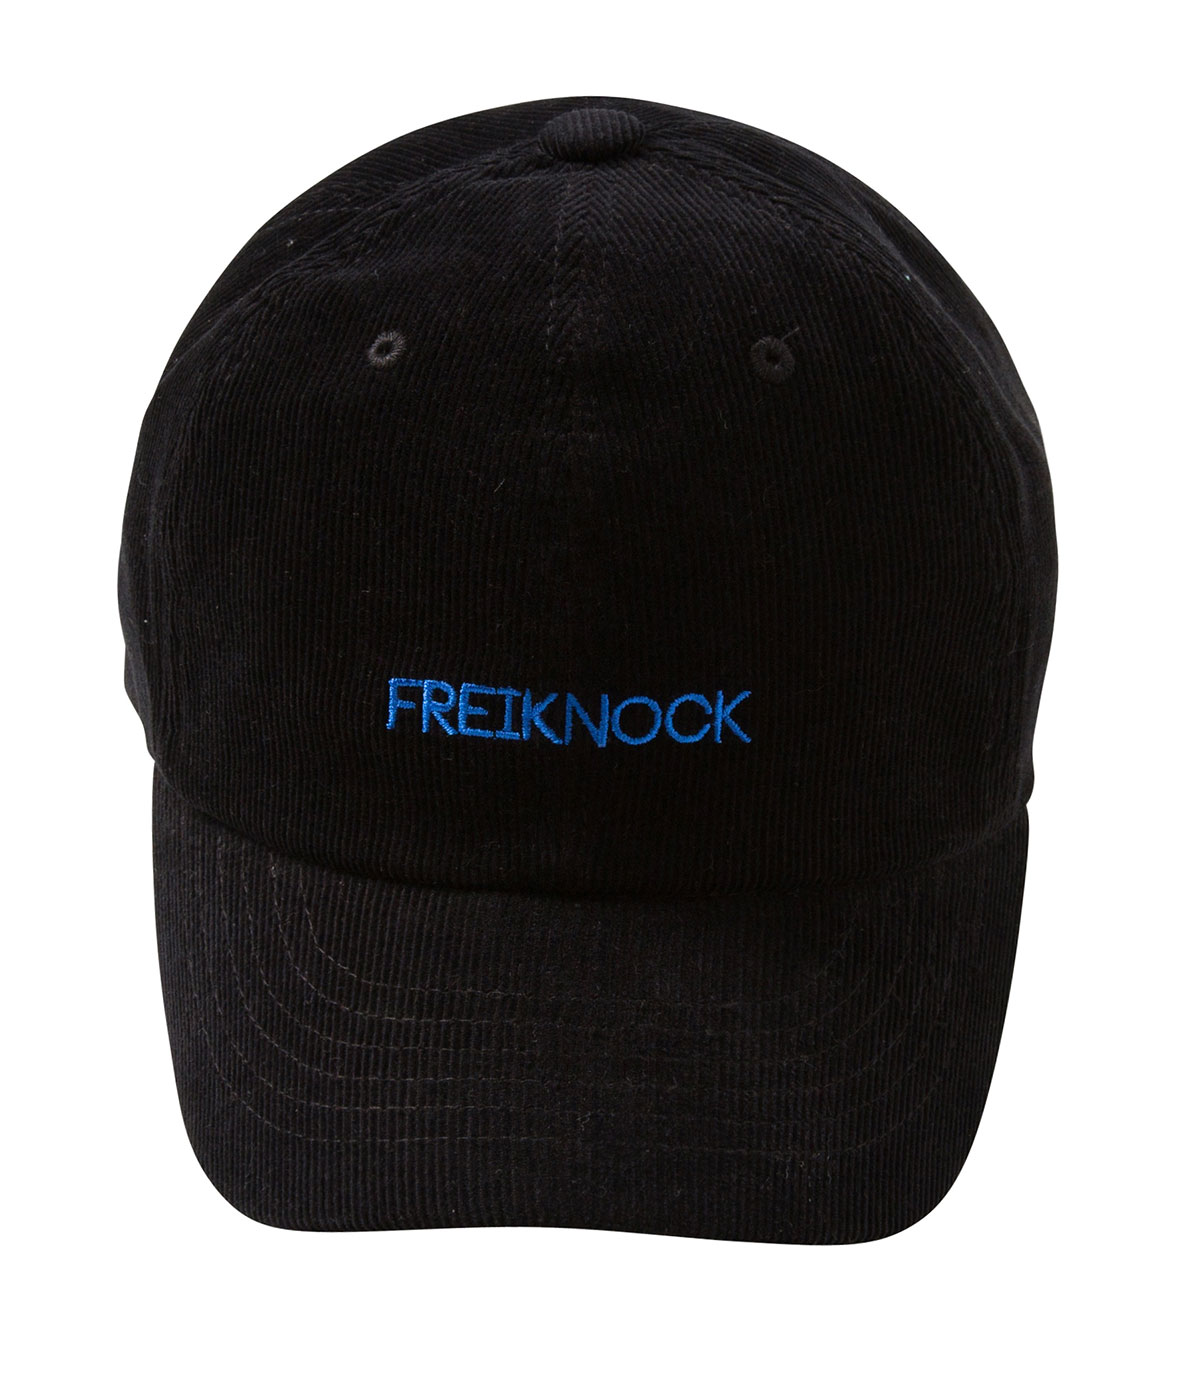 CORDUROY CAP(BLACK)